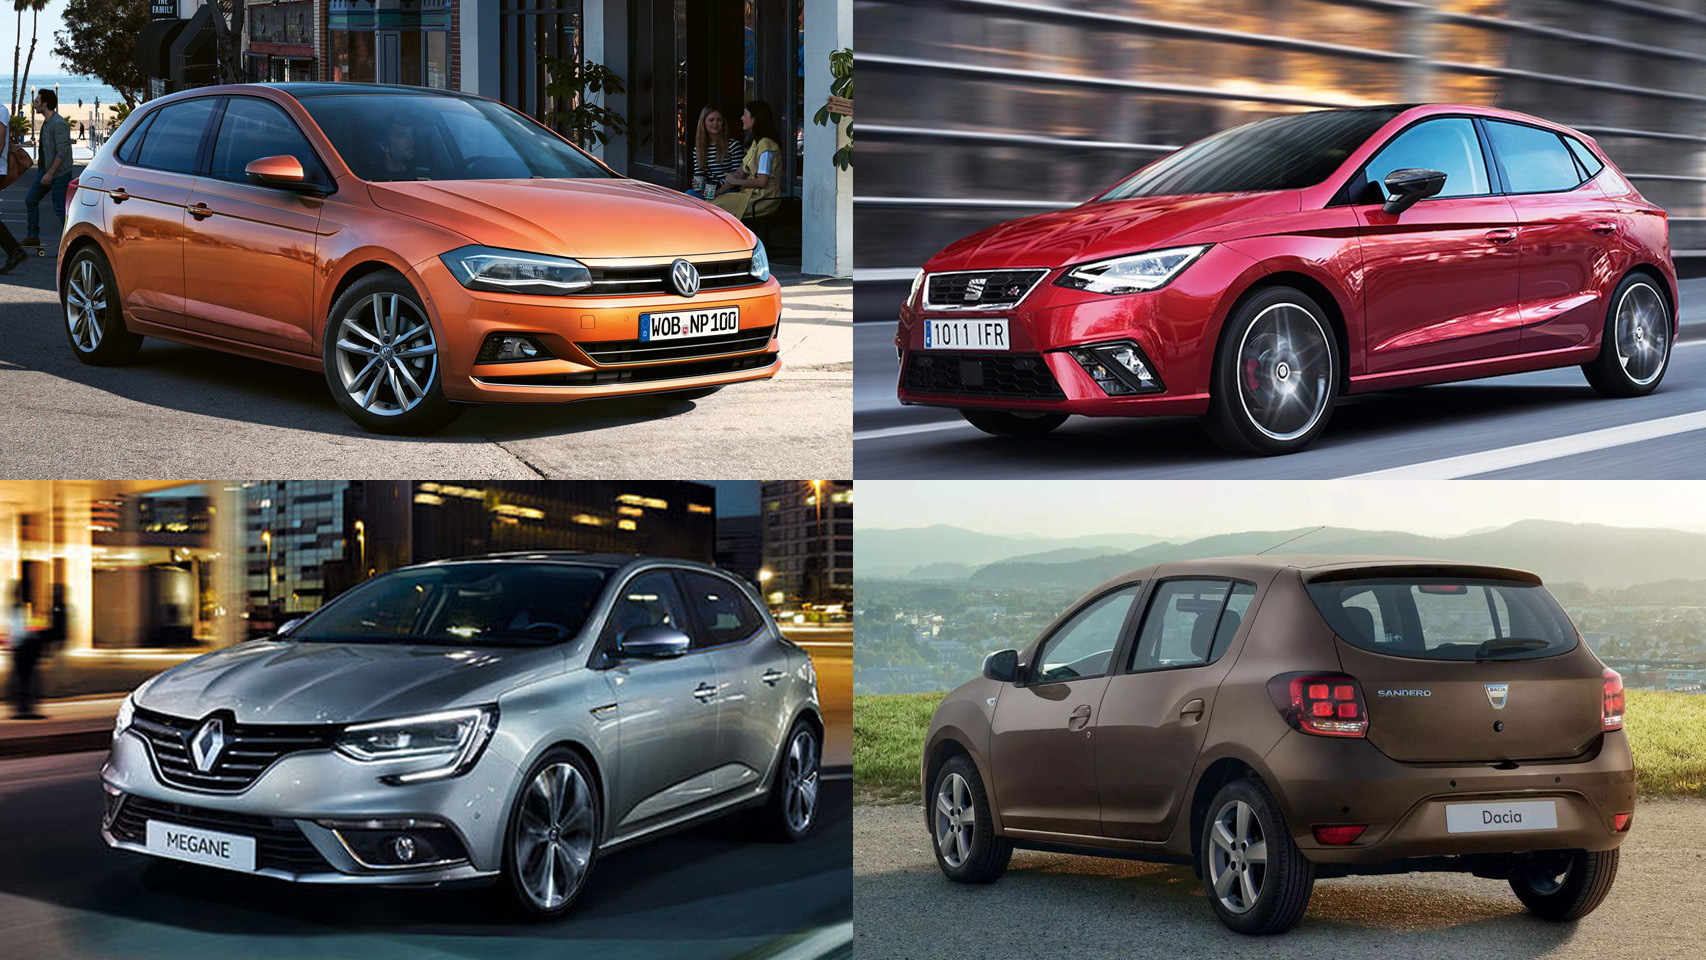 De izquierda a derecha y de arriba a abajo,  el Polo (Volkswagen),  el Ibiza (Seat), el Megane (Renault) y el Sandero (Dacia)